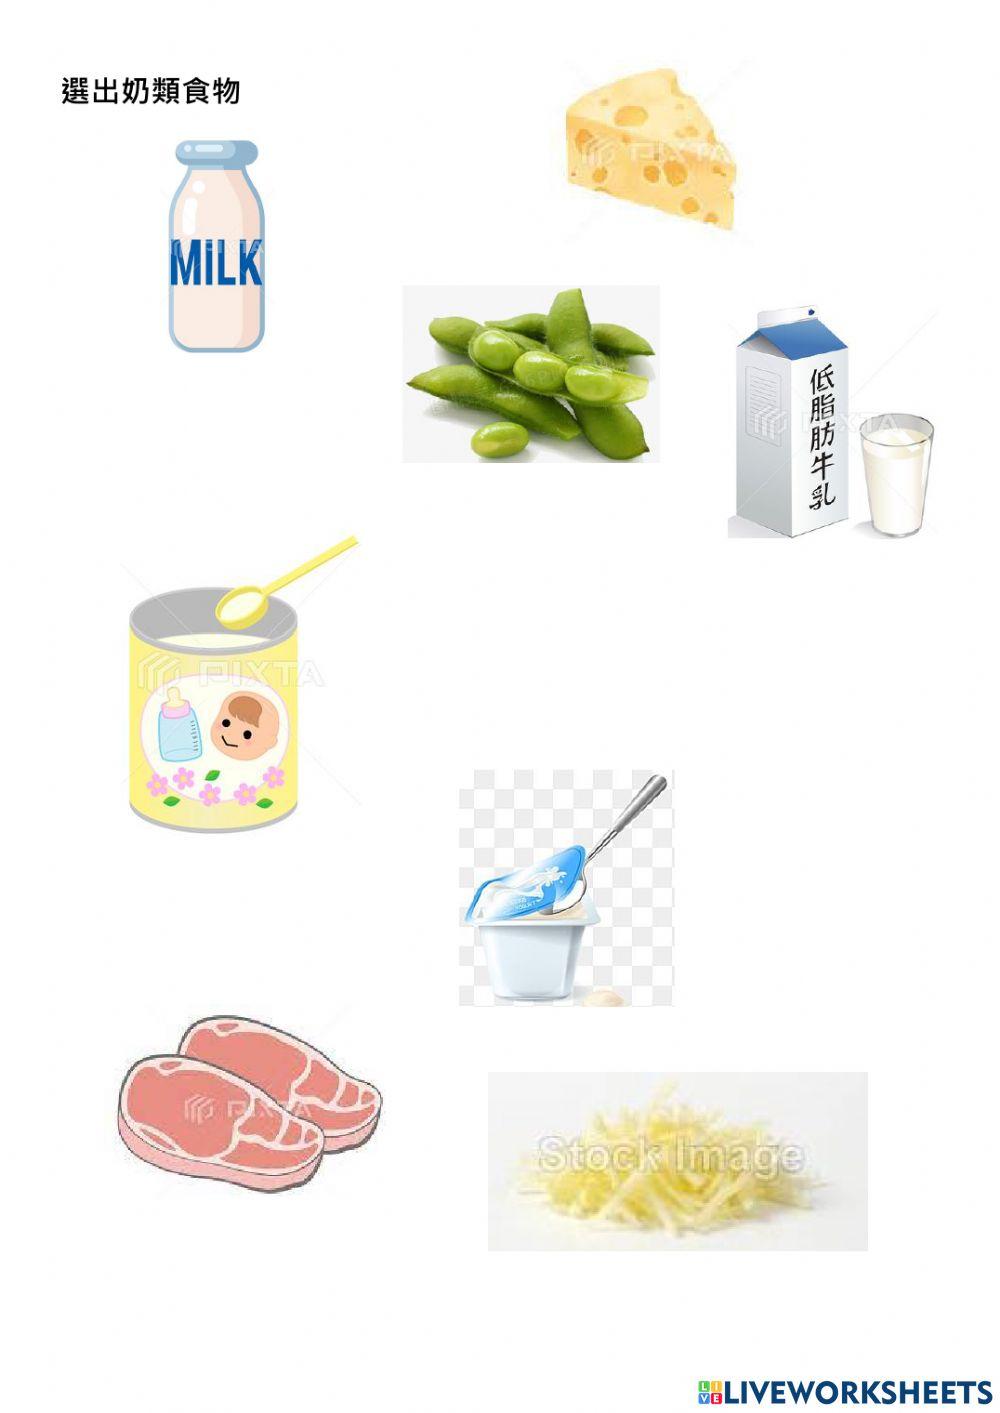 奶類食物